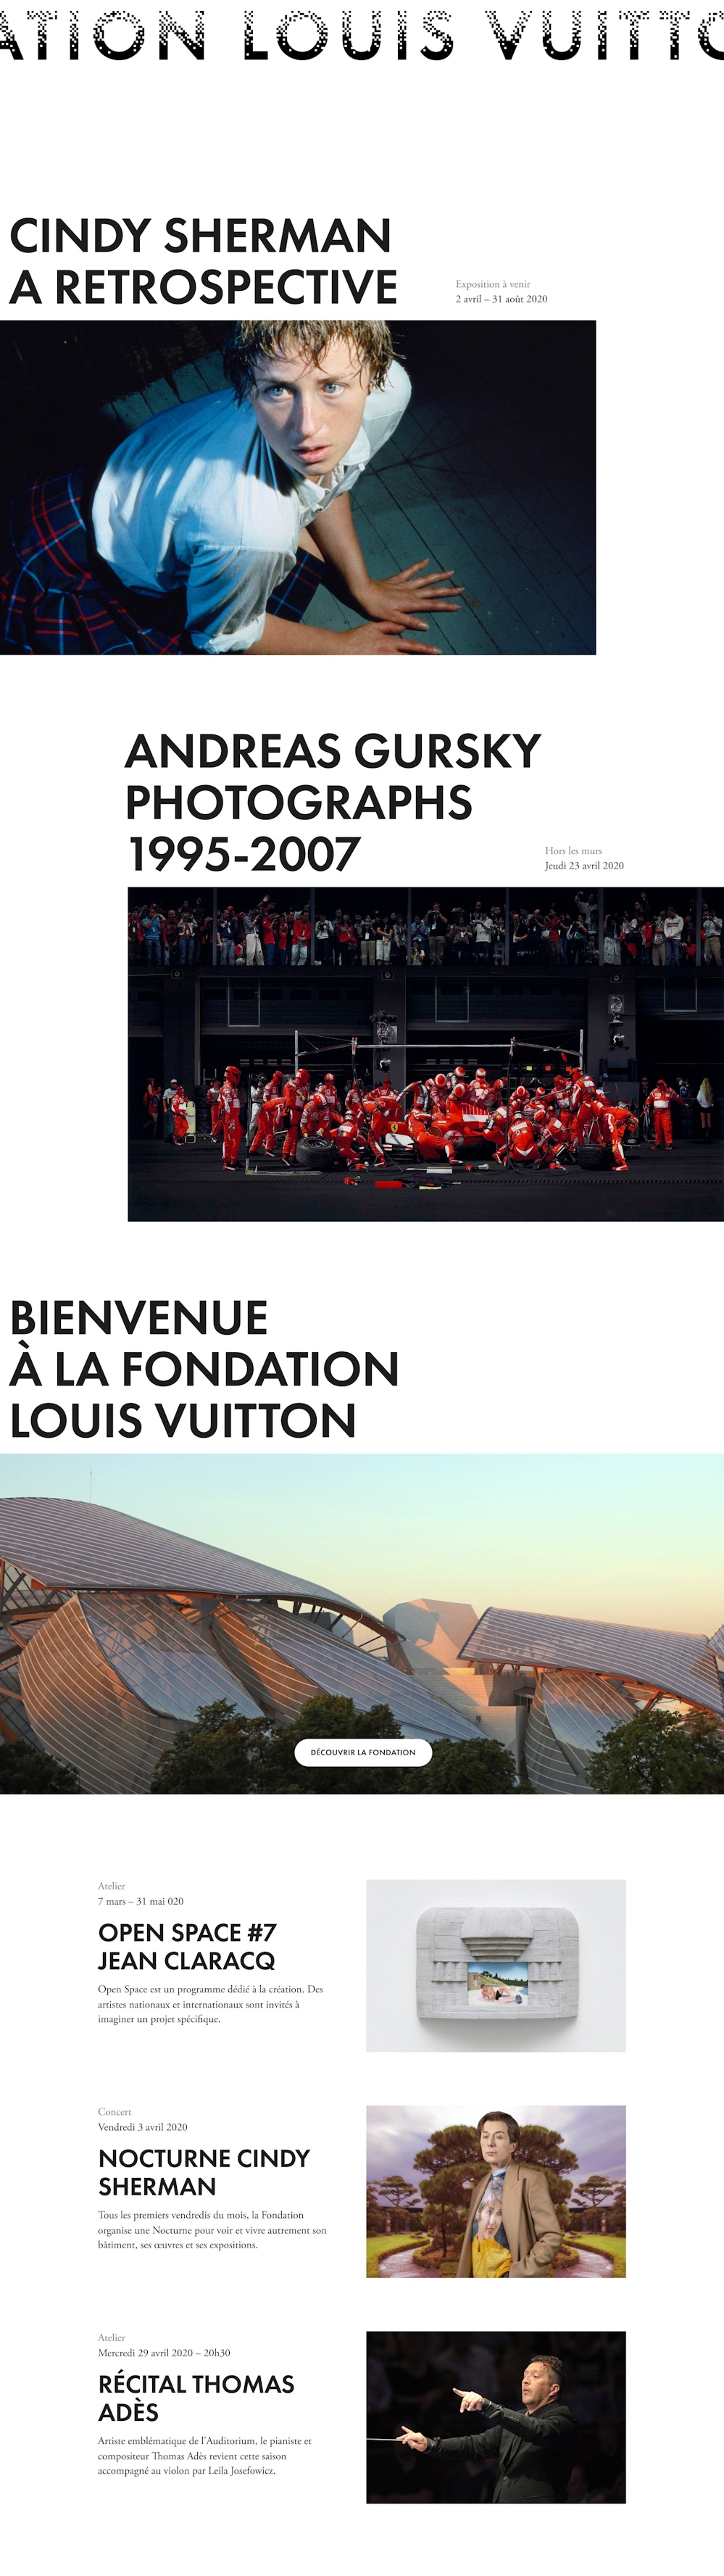 Fondation Louis Vuitton — AREA 17